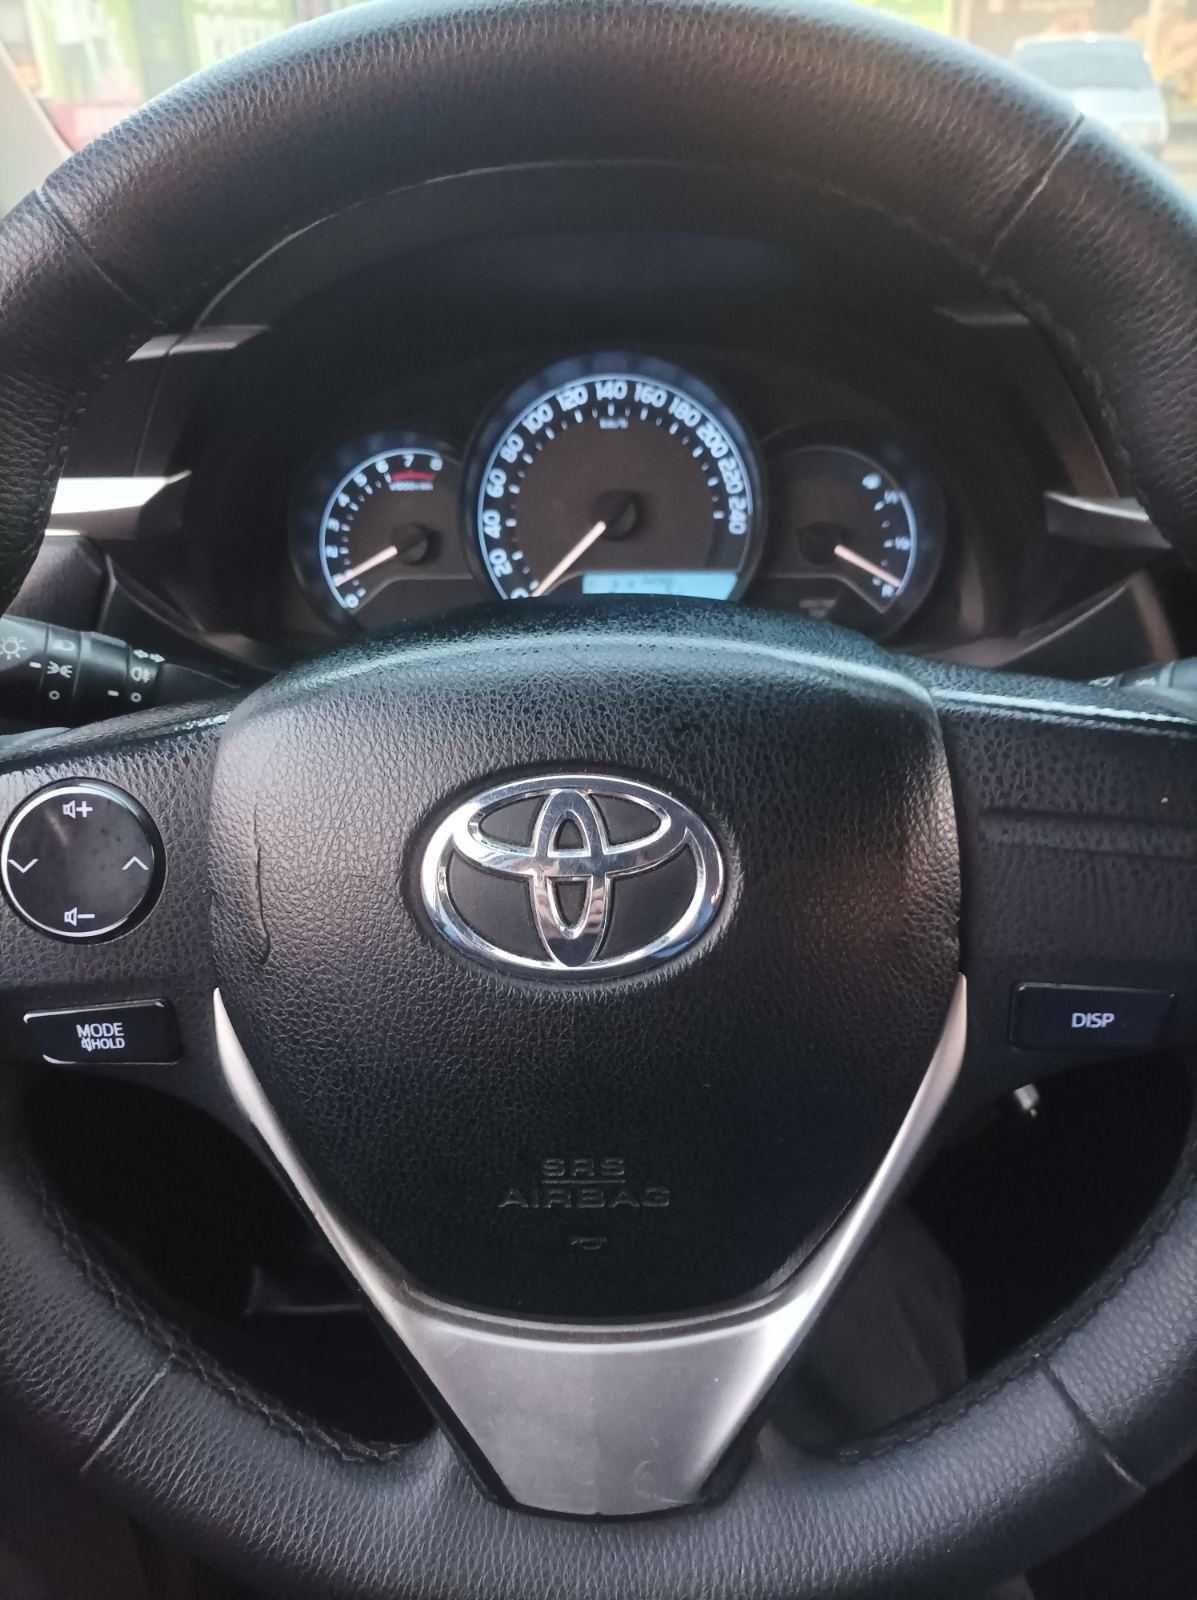 Продам Toyota Corolla 2014 в гарному стані